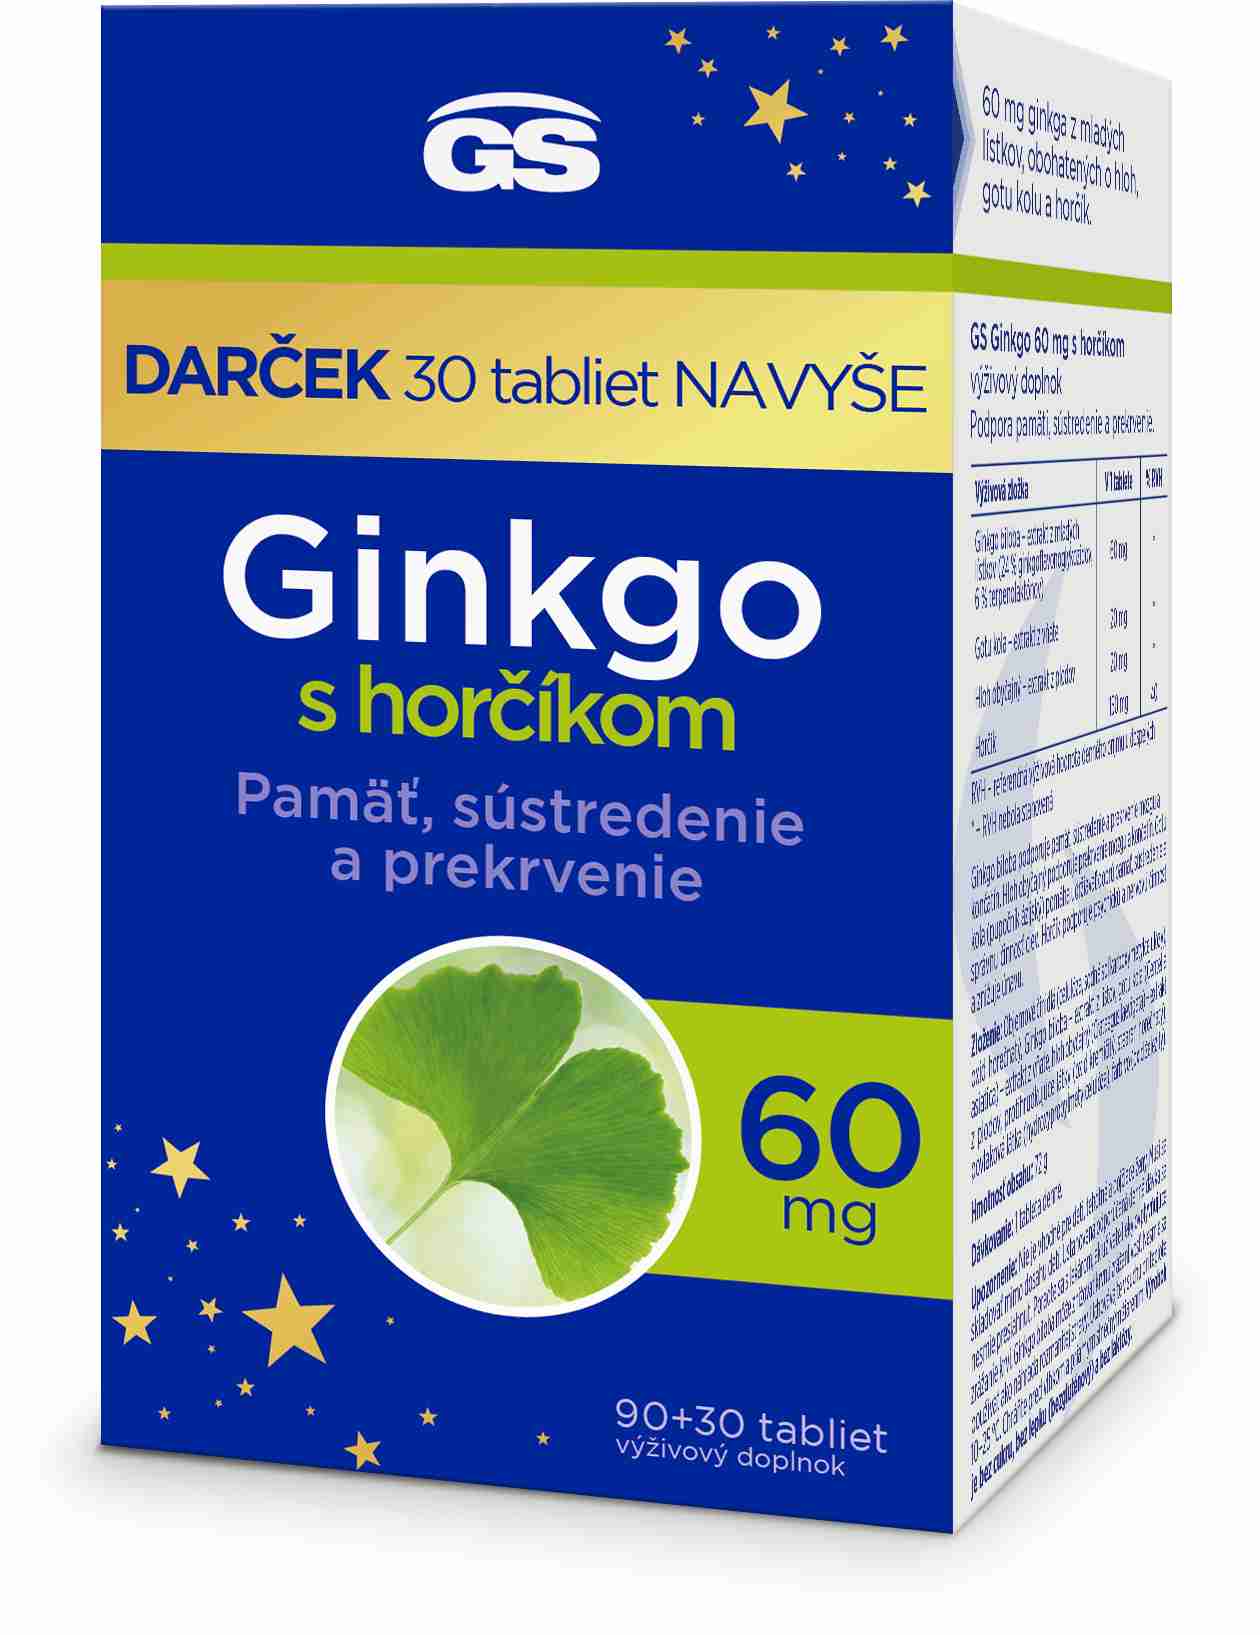 GS Ginkgo 60 mg s horčíkom. 9030 darček